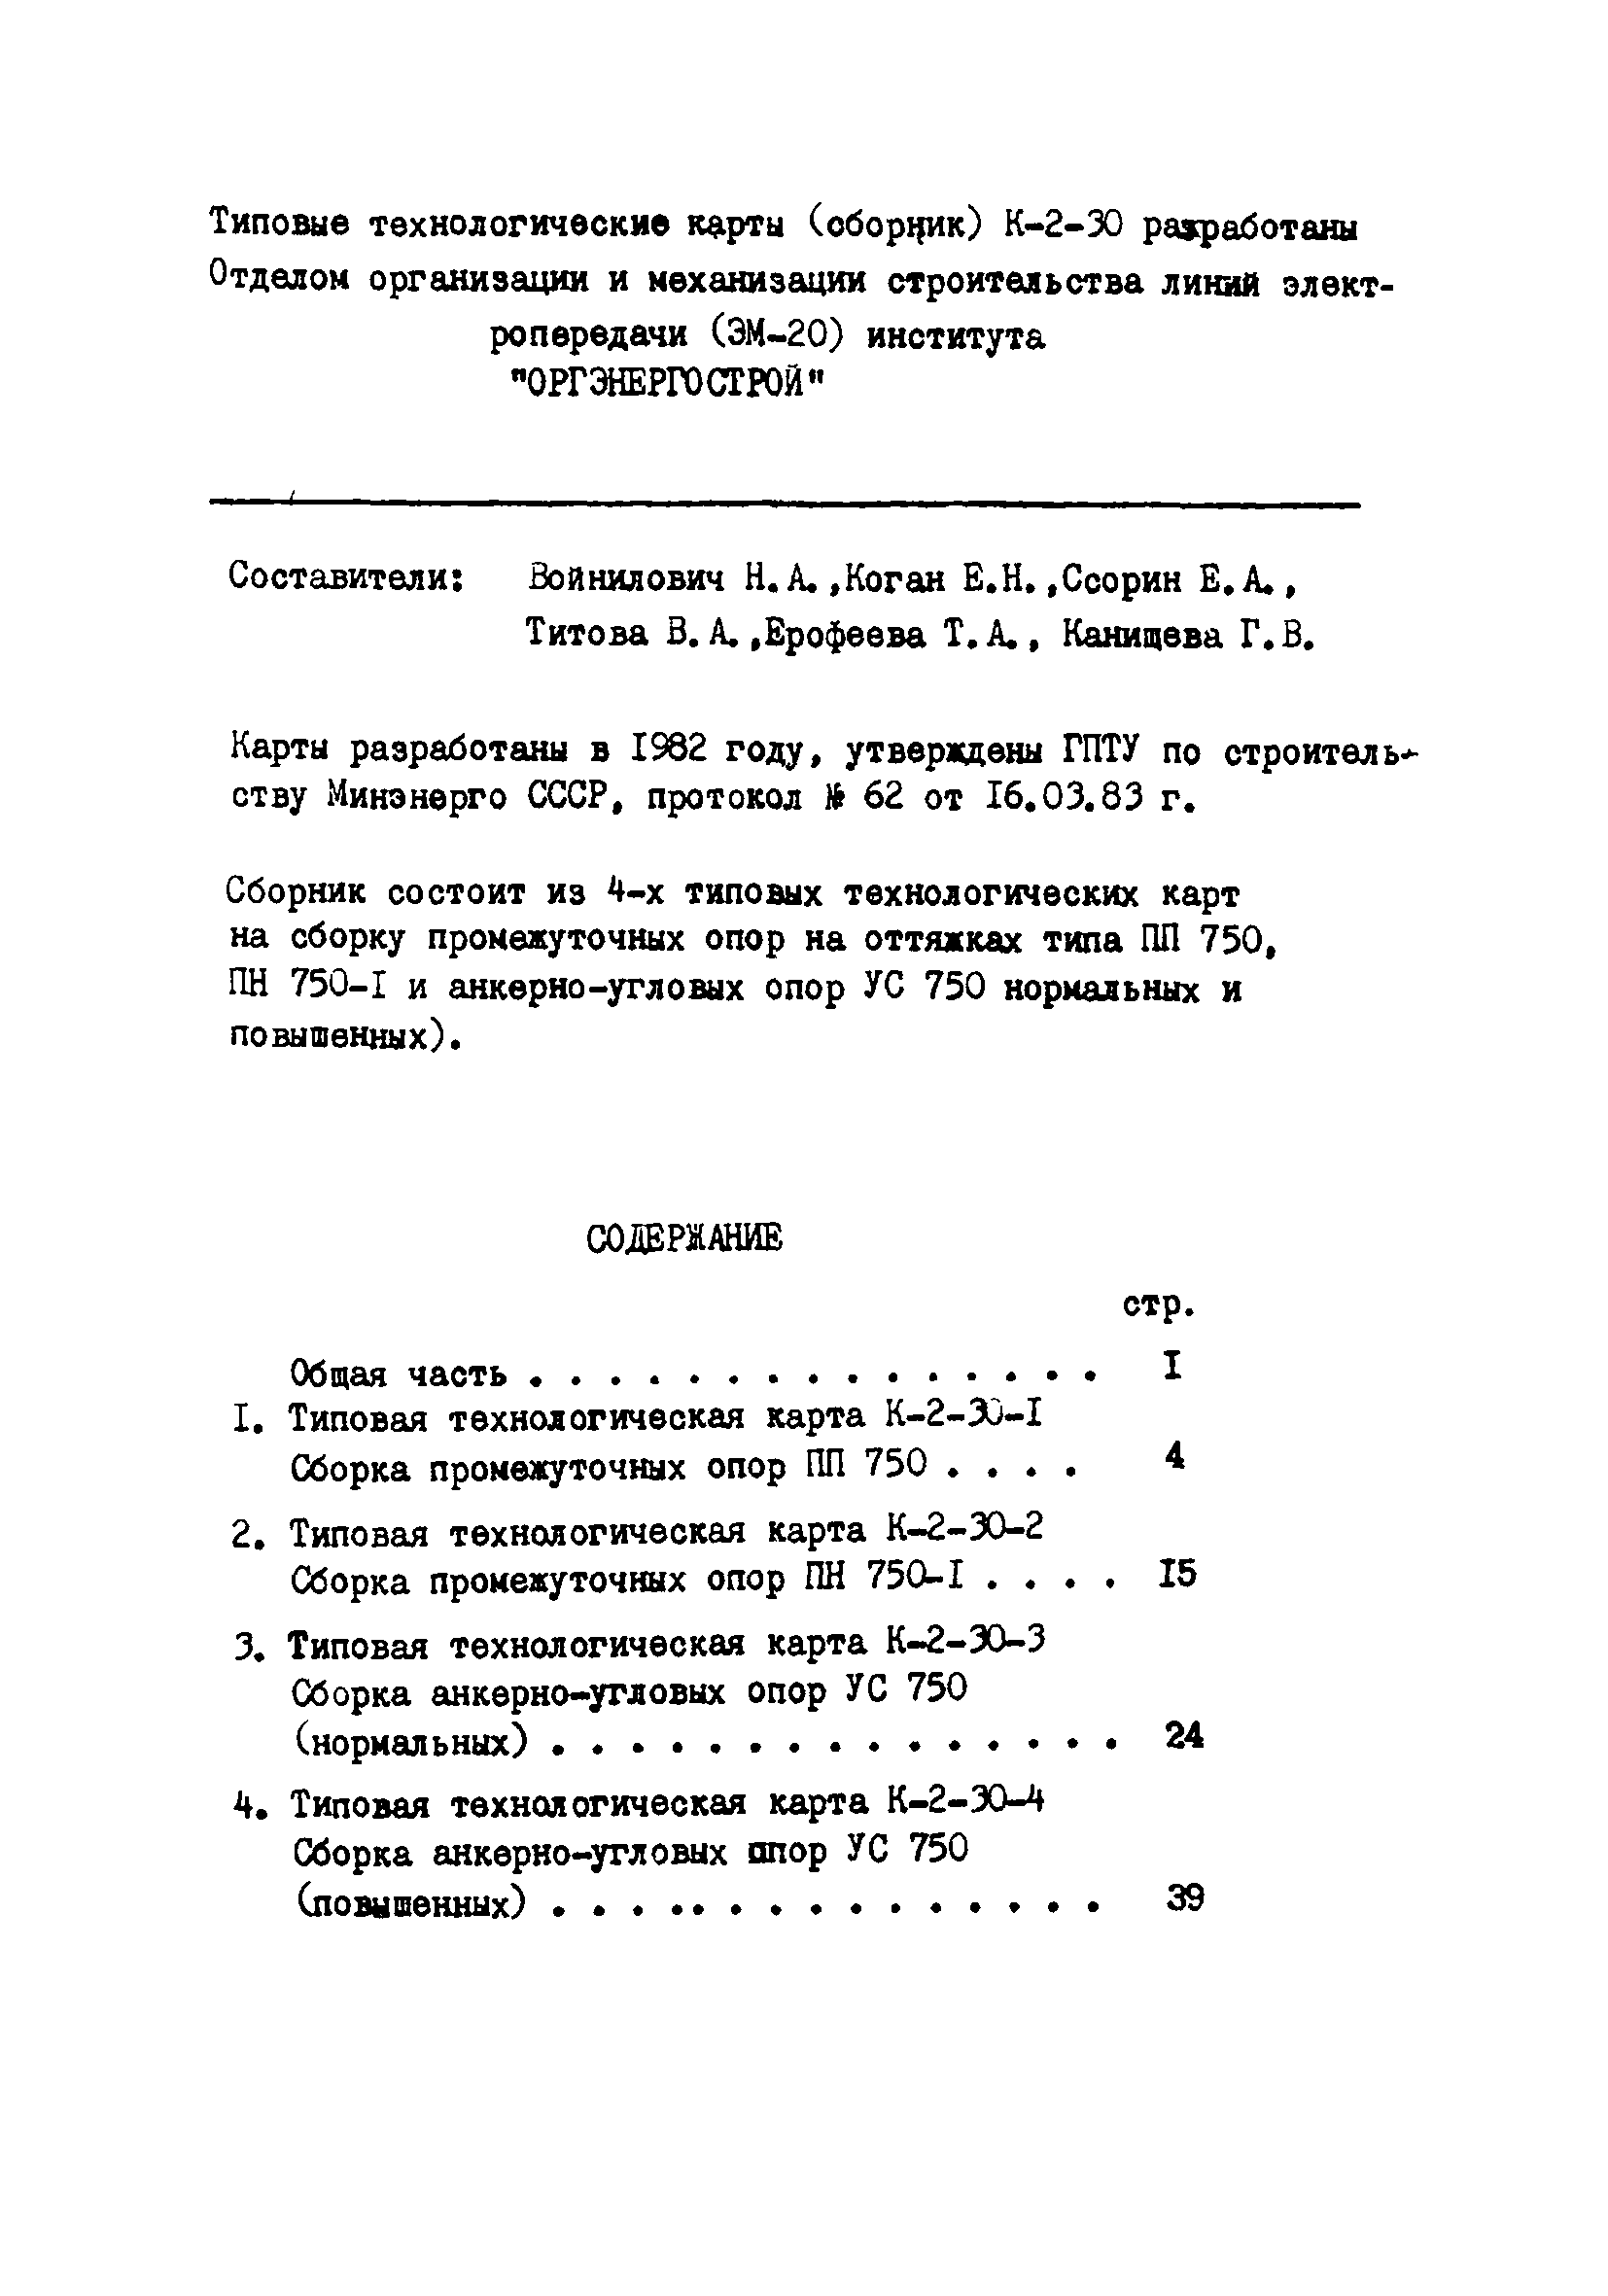 ТТК К-2-30-4